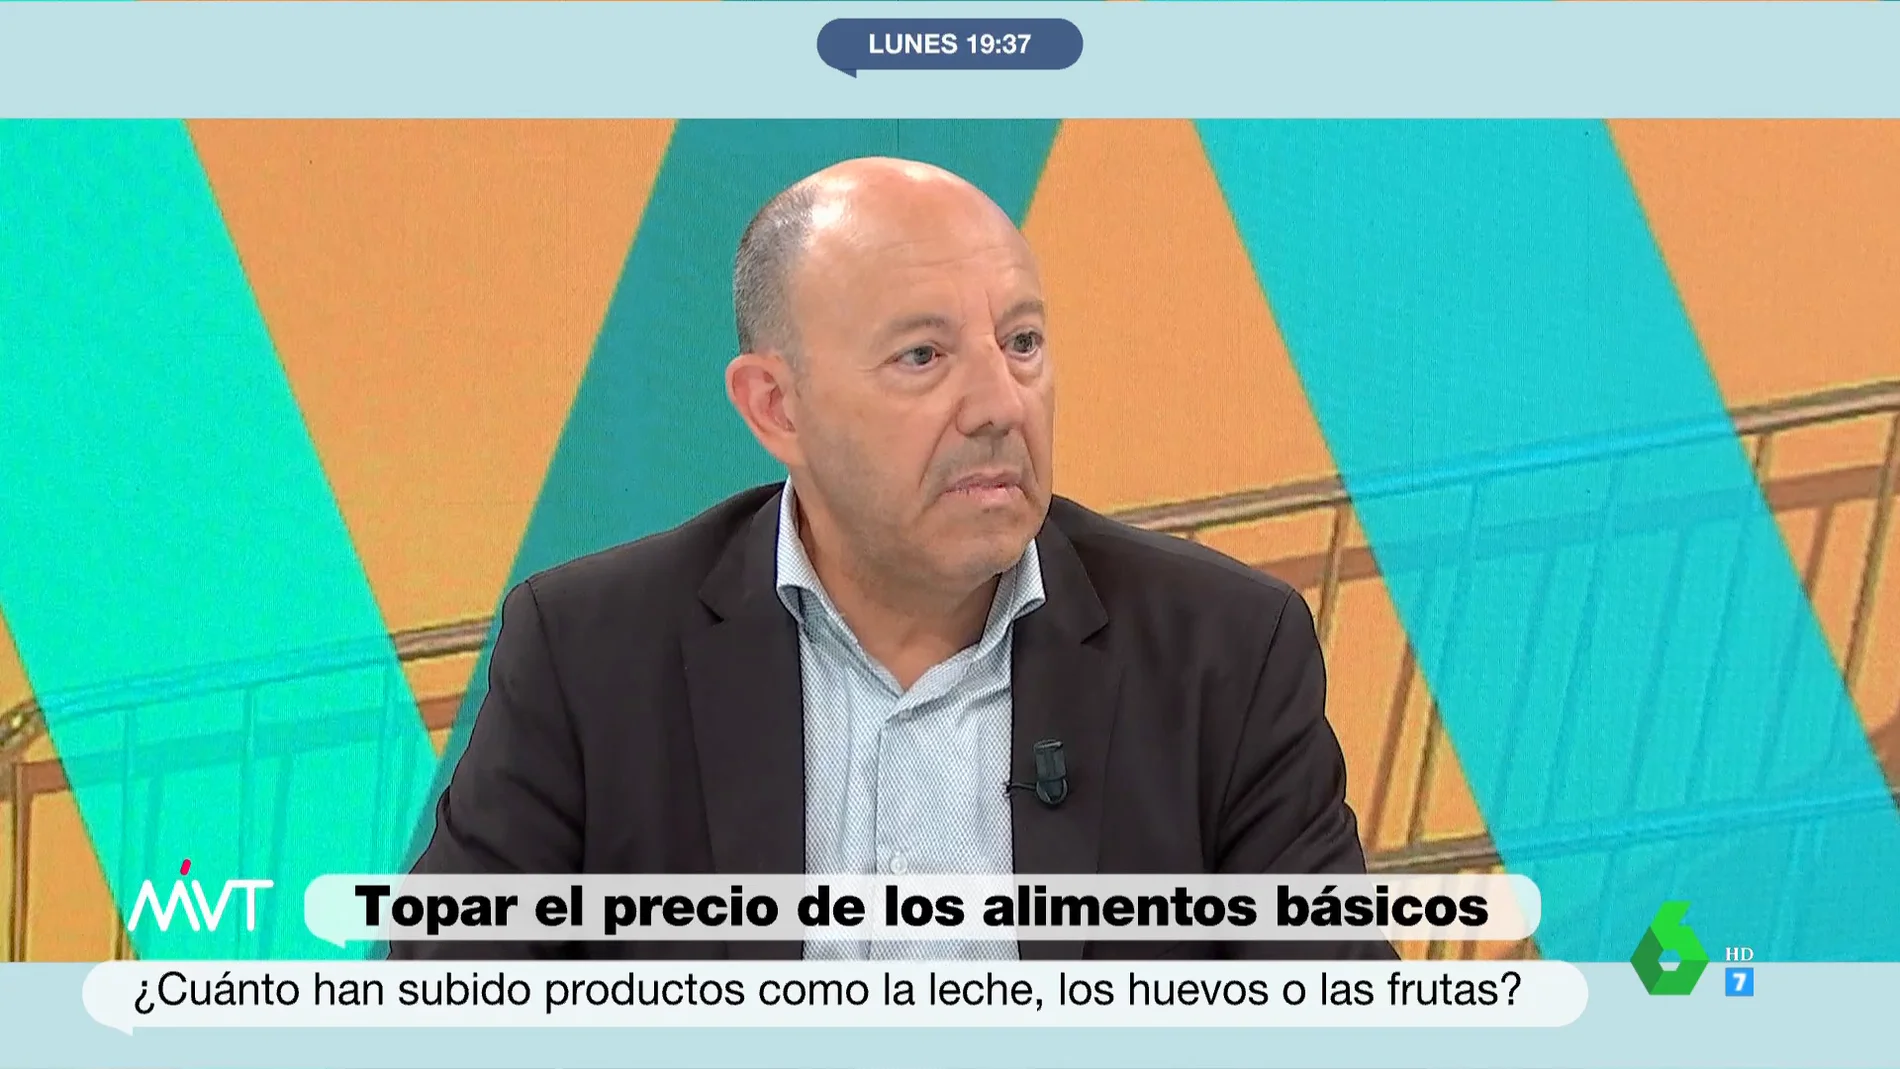 Bernardos identifica "dos problemas importantes" de la propuesta de topar el precio de alimentos básicos